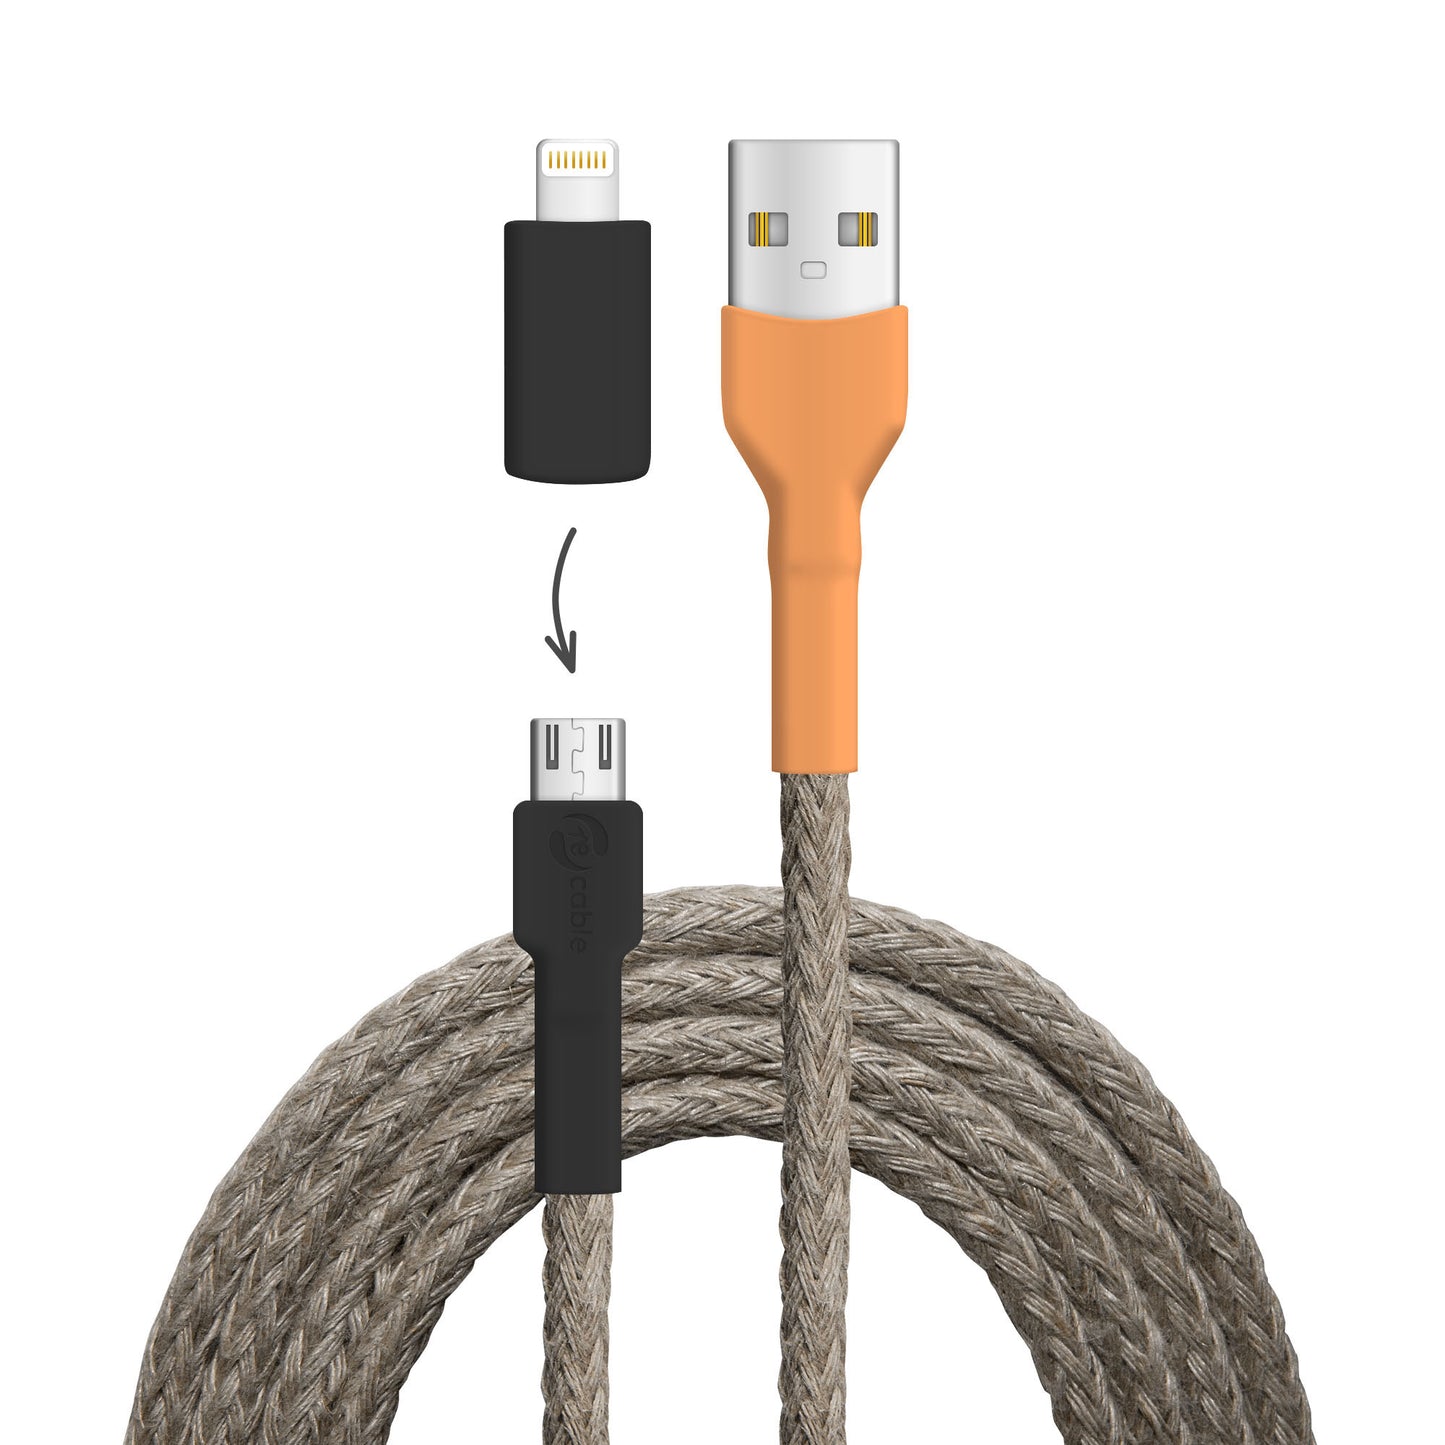 USB-Kabel, Design: Wasser­hahn, Anschlüsse: USB A auf Micro-USB mit Lightning Adapter (nicht verbunden)